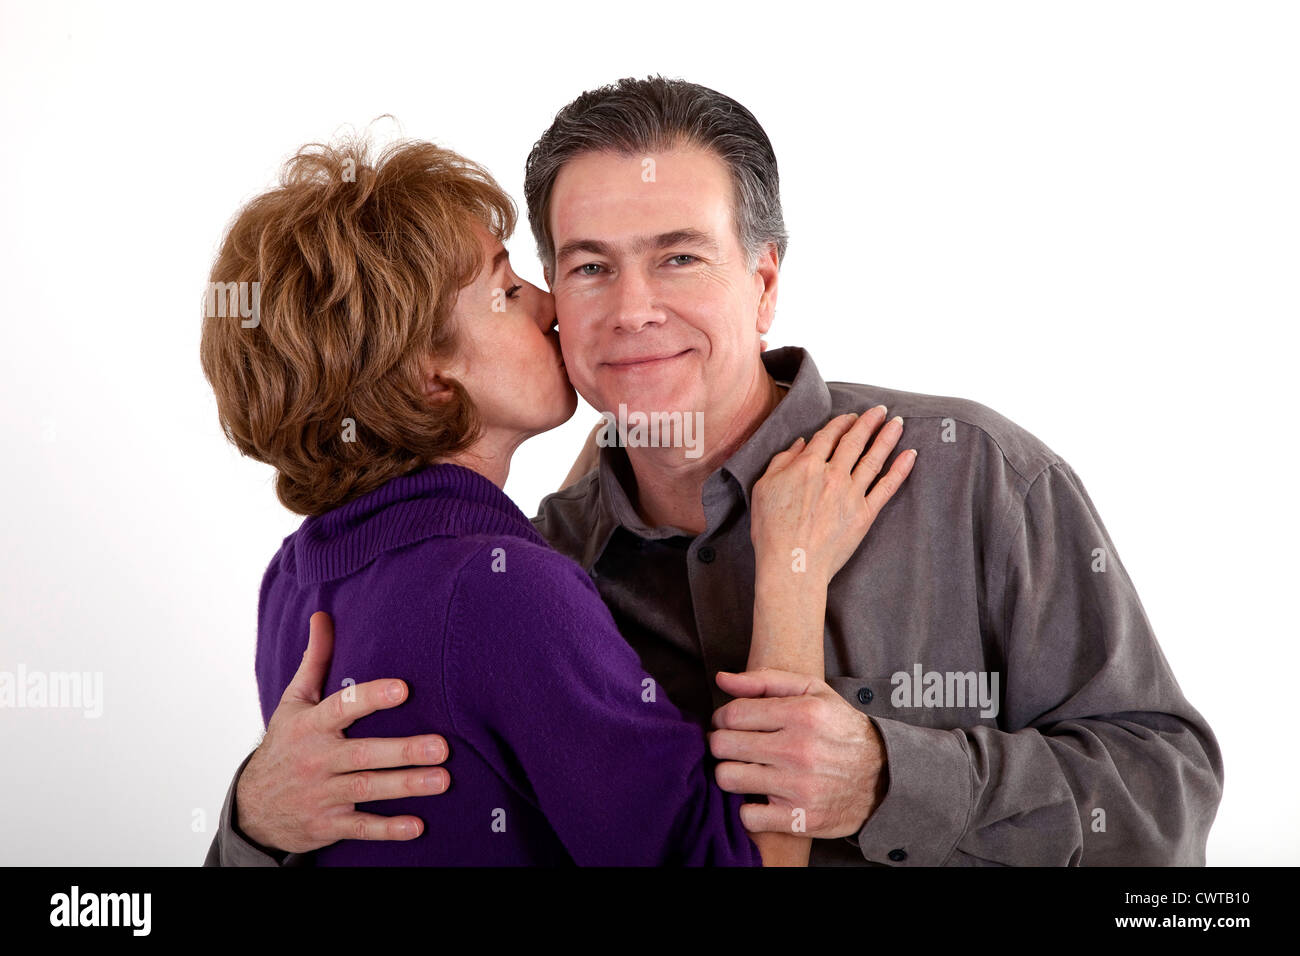 Eine Frau gibt ihrem Partner ein Küsschen auf die Wange, während er anerkennend lächelt. Stockfoto